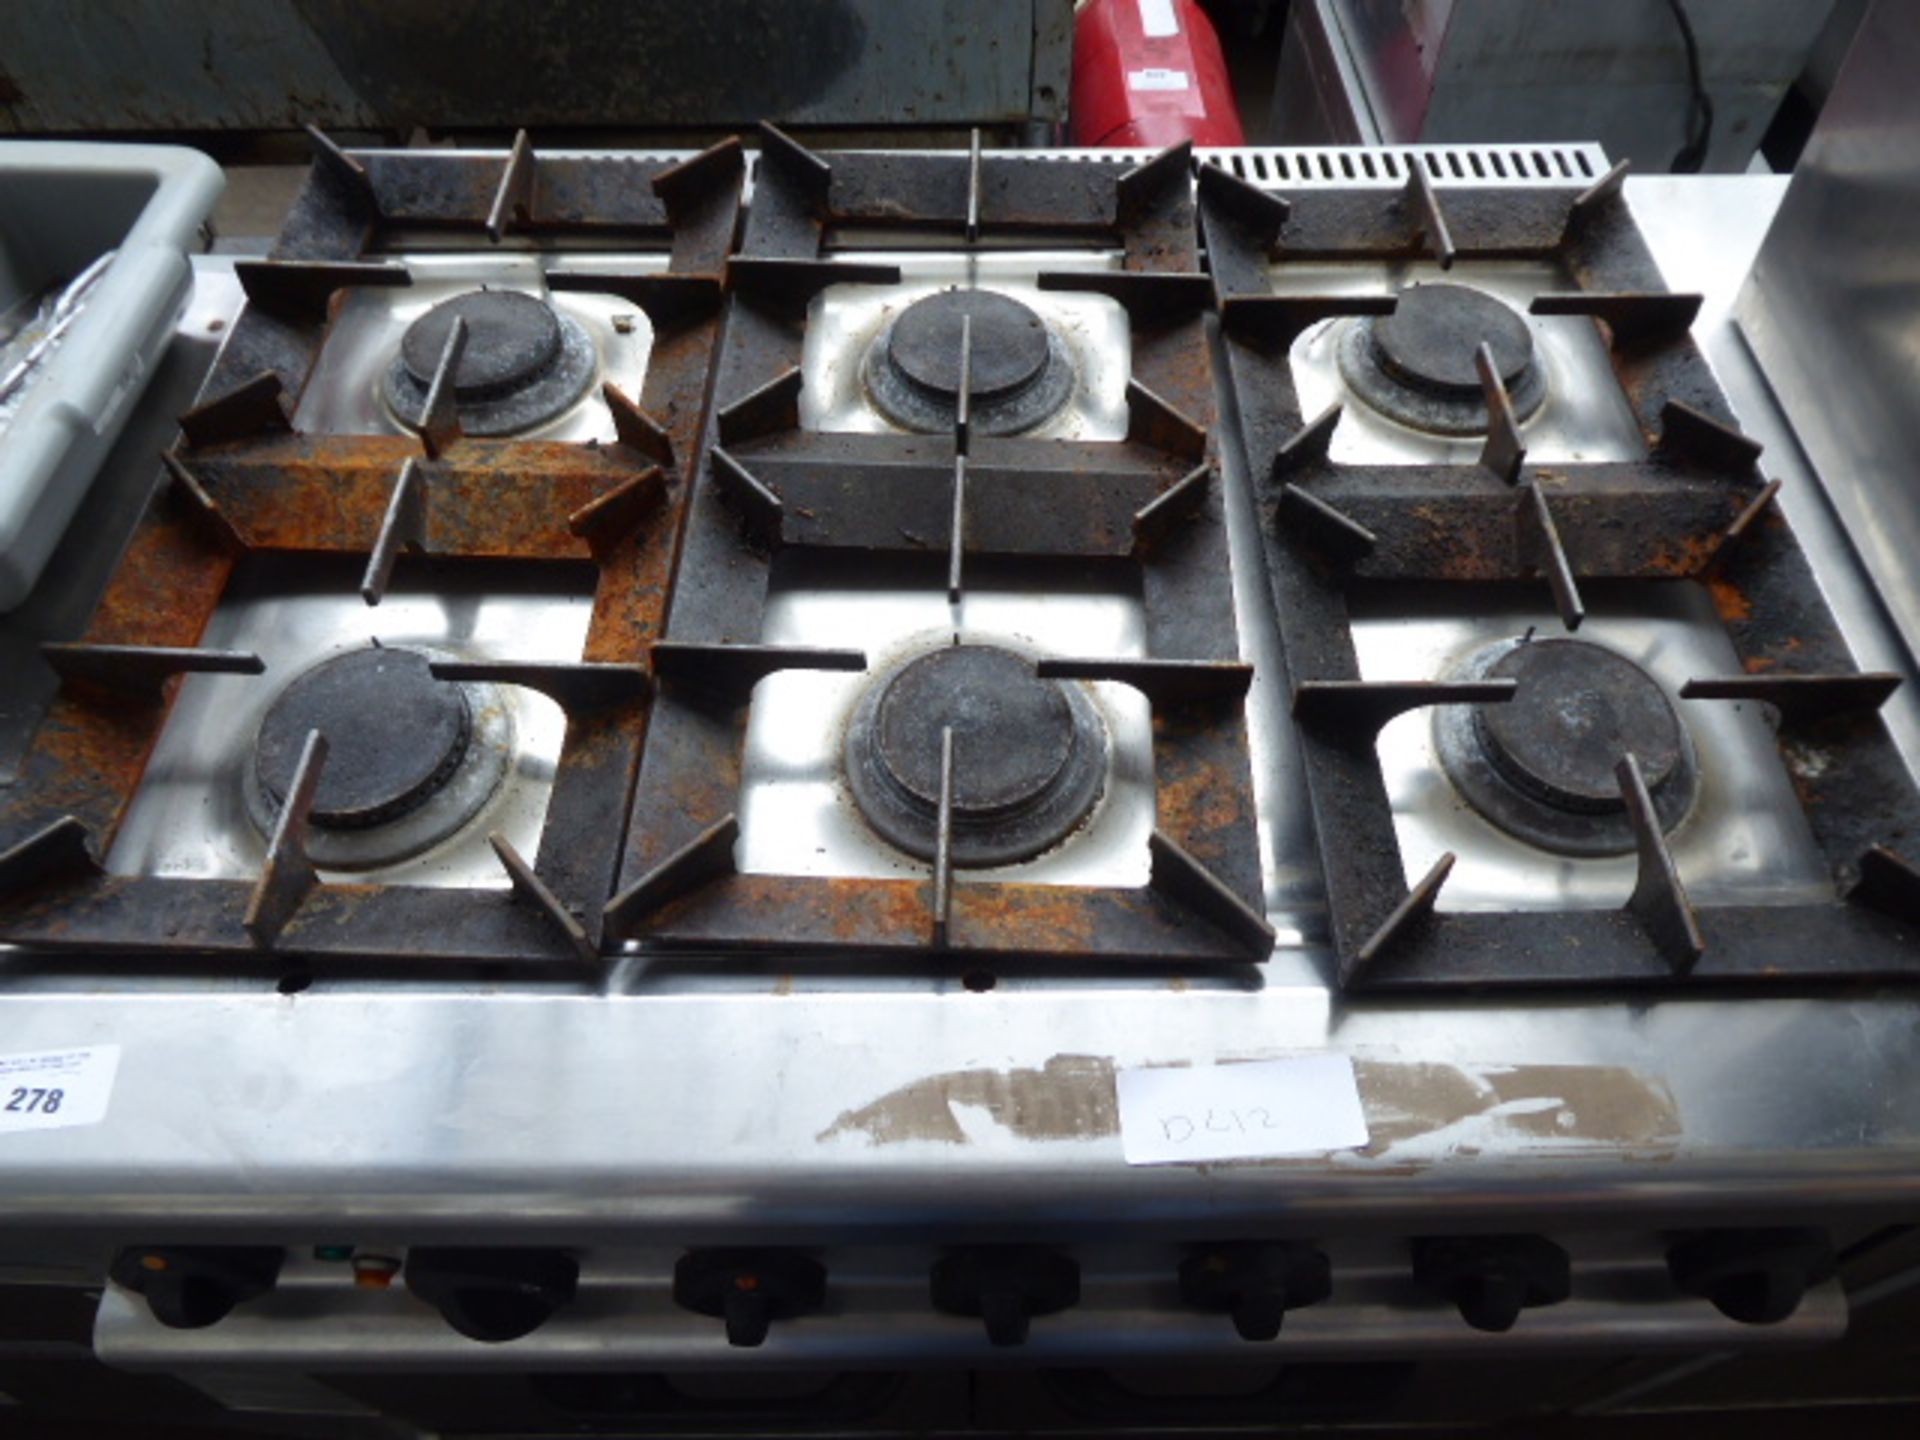 90cm gas Lincat 6 burner cooker with 2 door oven under - Image 2 of 3